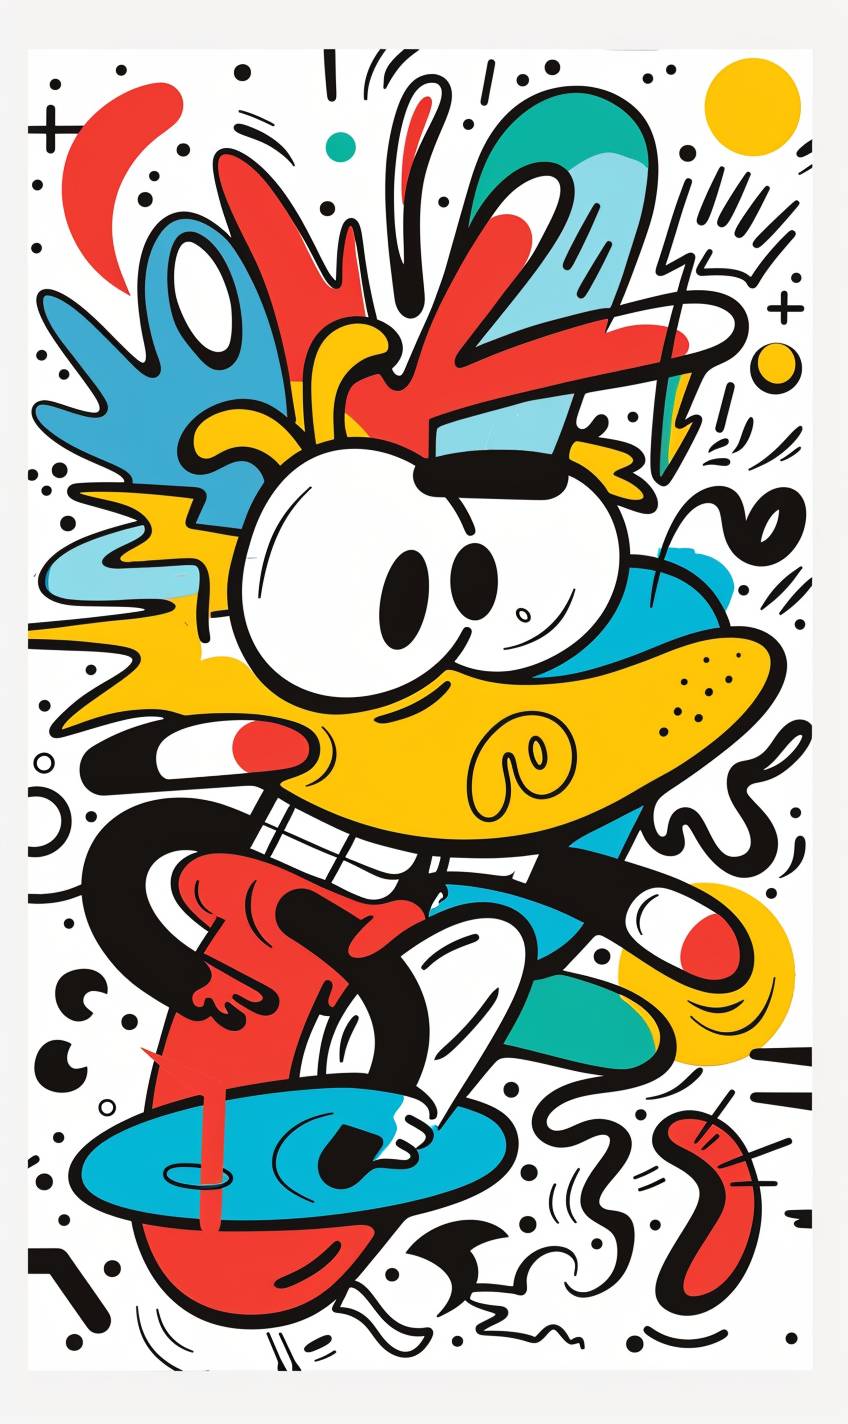 Keith Haring風のカートゥーンキャラクターの抽象的なベクターイラスト